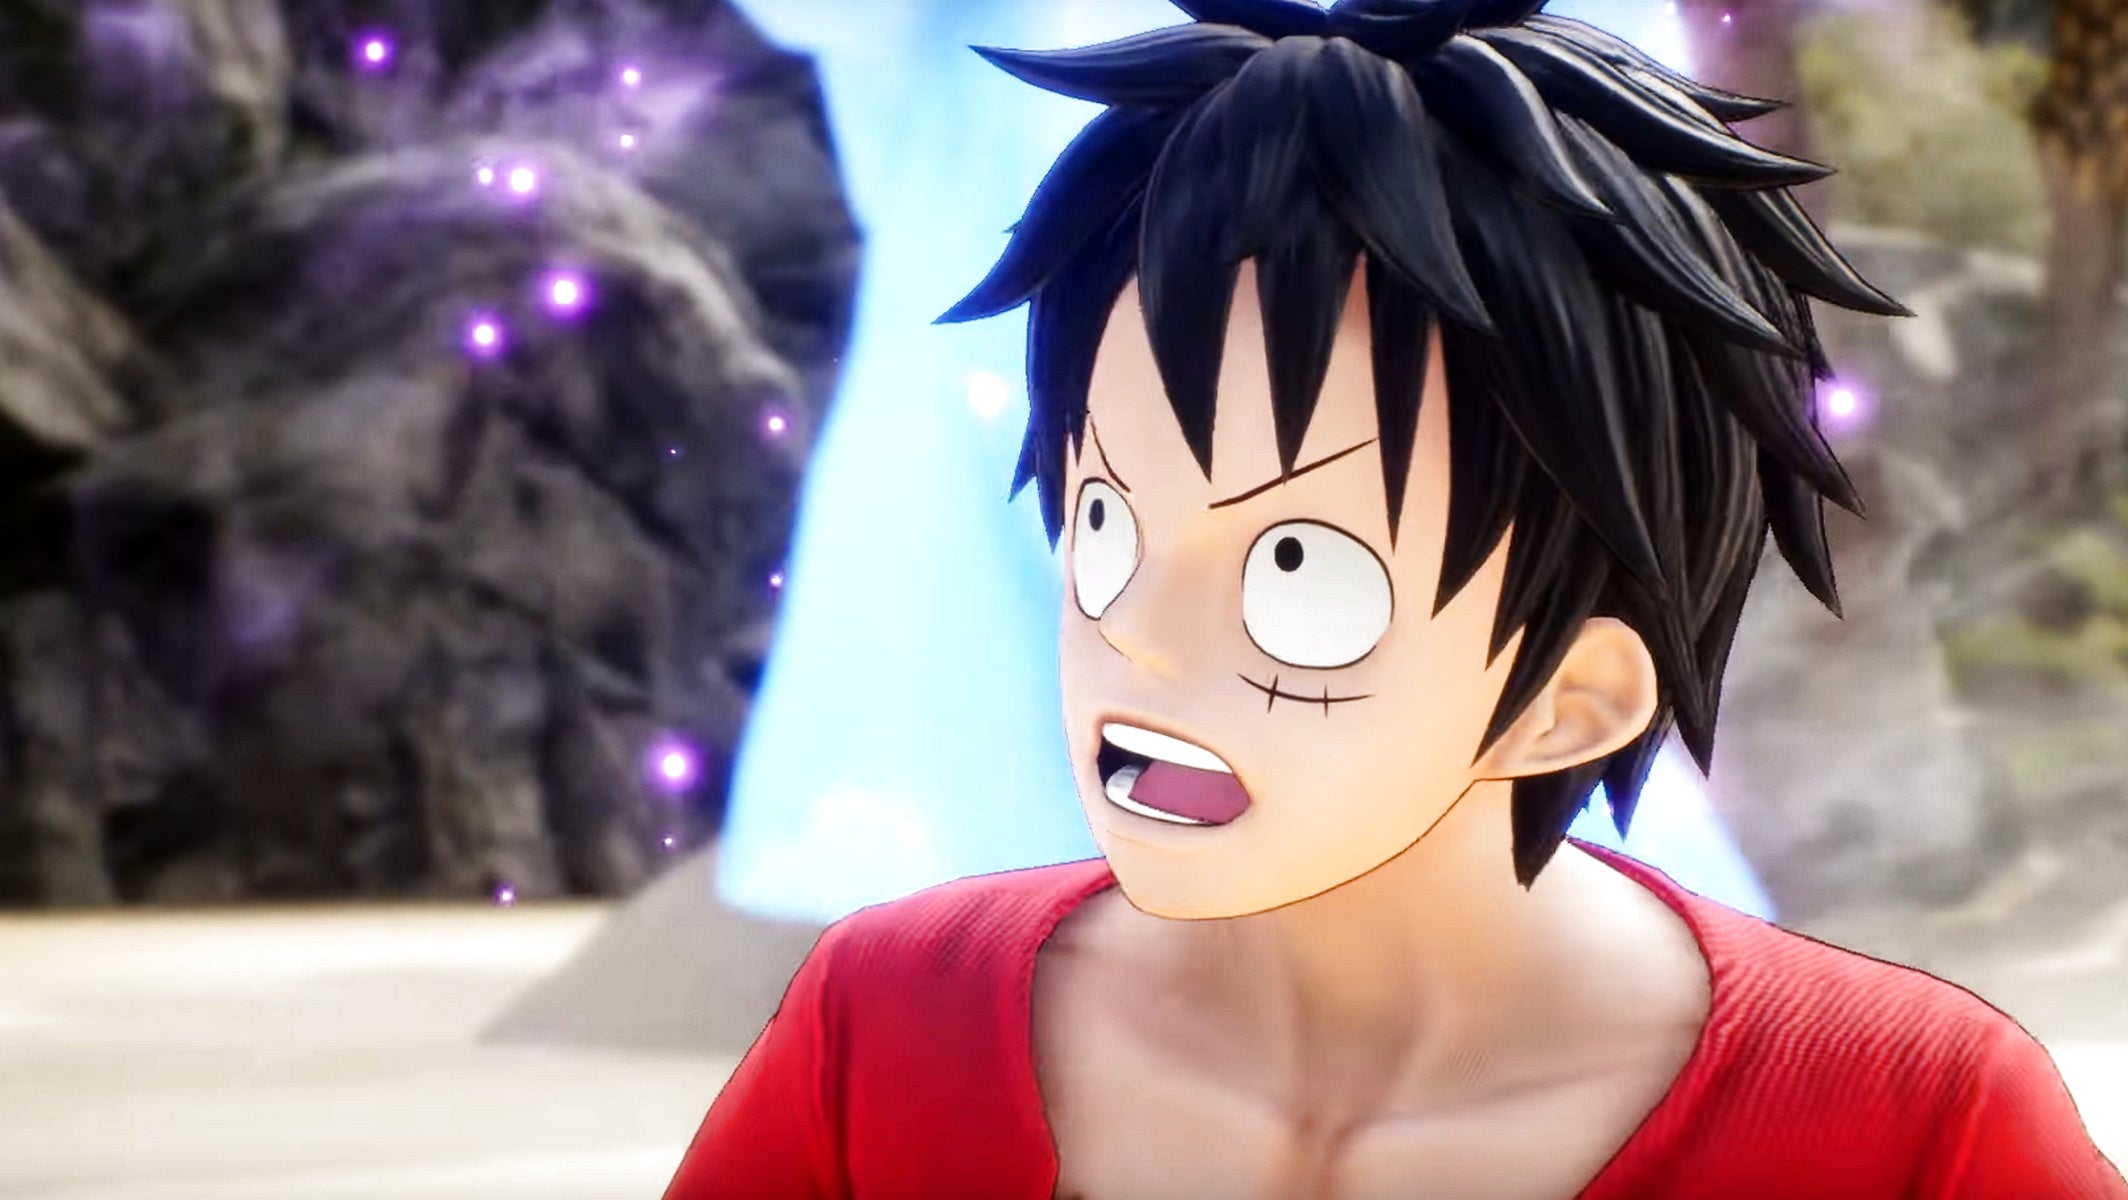 Bilder zu One Piece Odyssey angekündigt, bringt euch noch dieses Jahr neue Designs von Eiichiro Oda